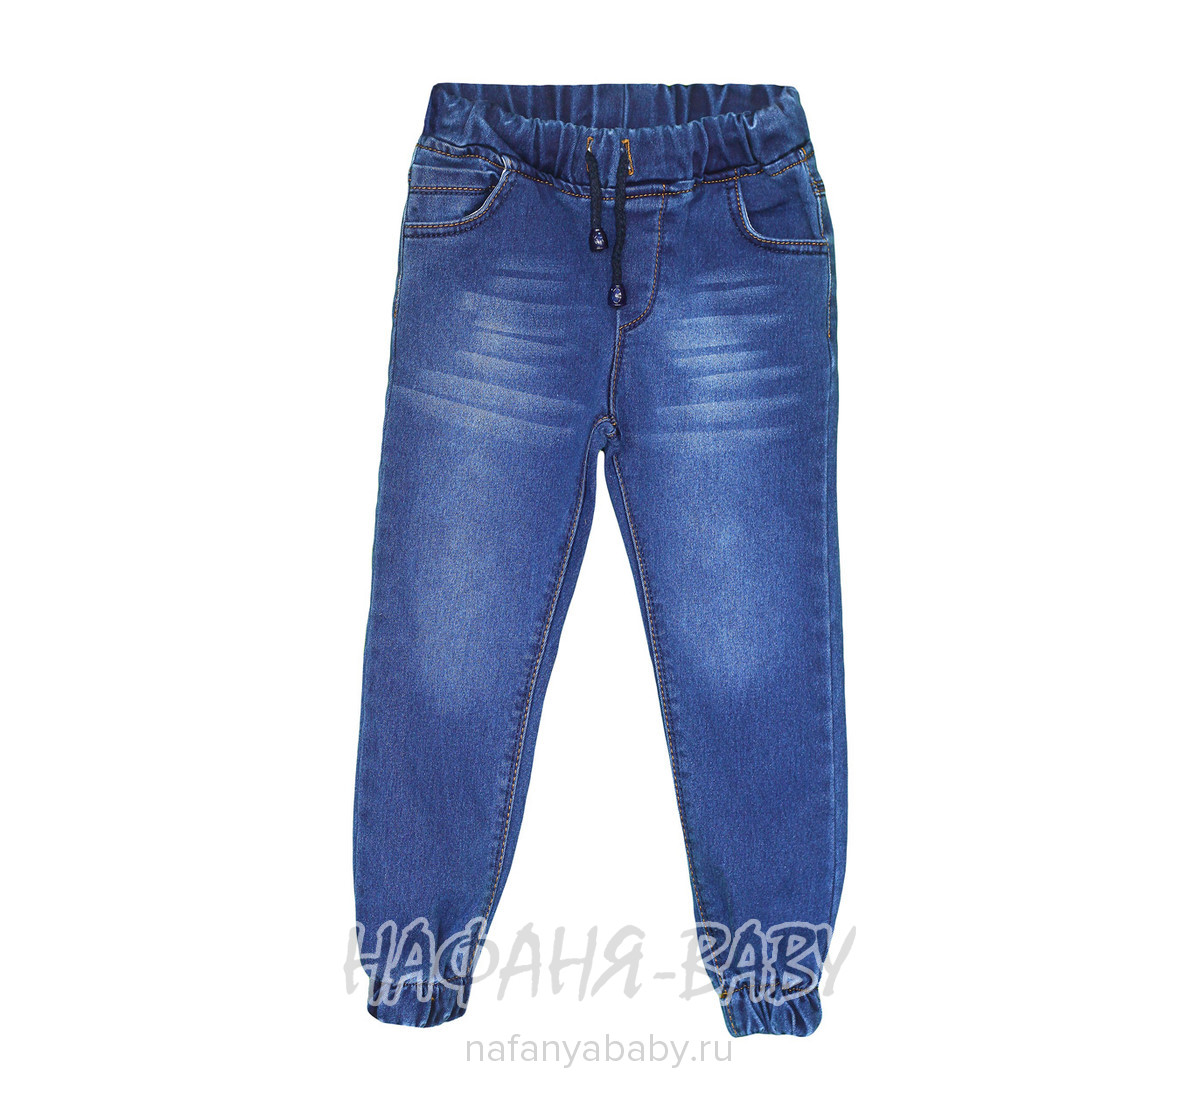 Подростковые джинсы TATI Jeans арт: 9886, 10-15 лет, 5-9 лет, оптом Турция